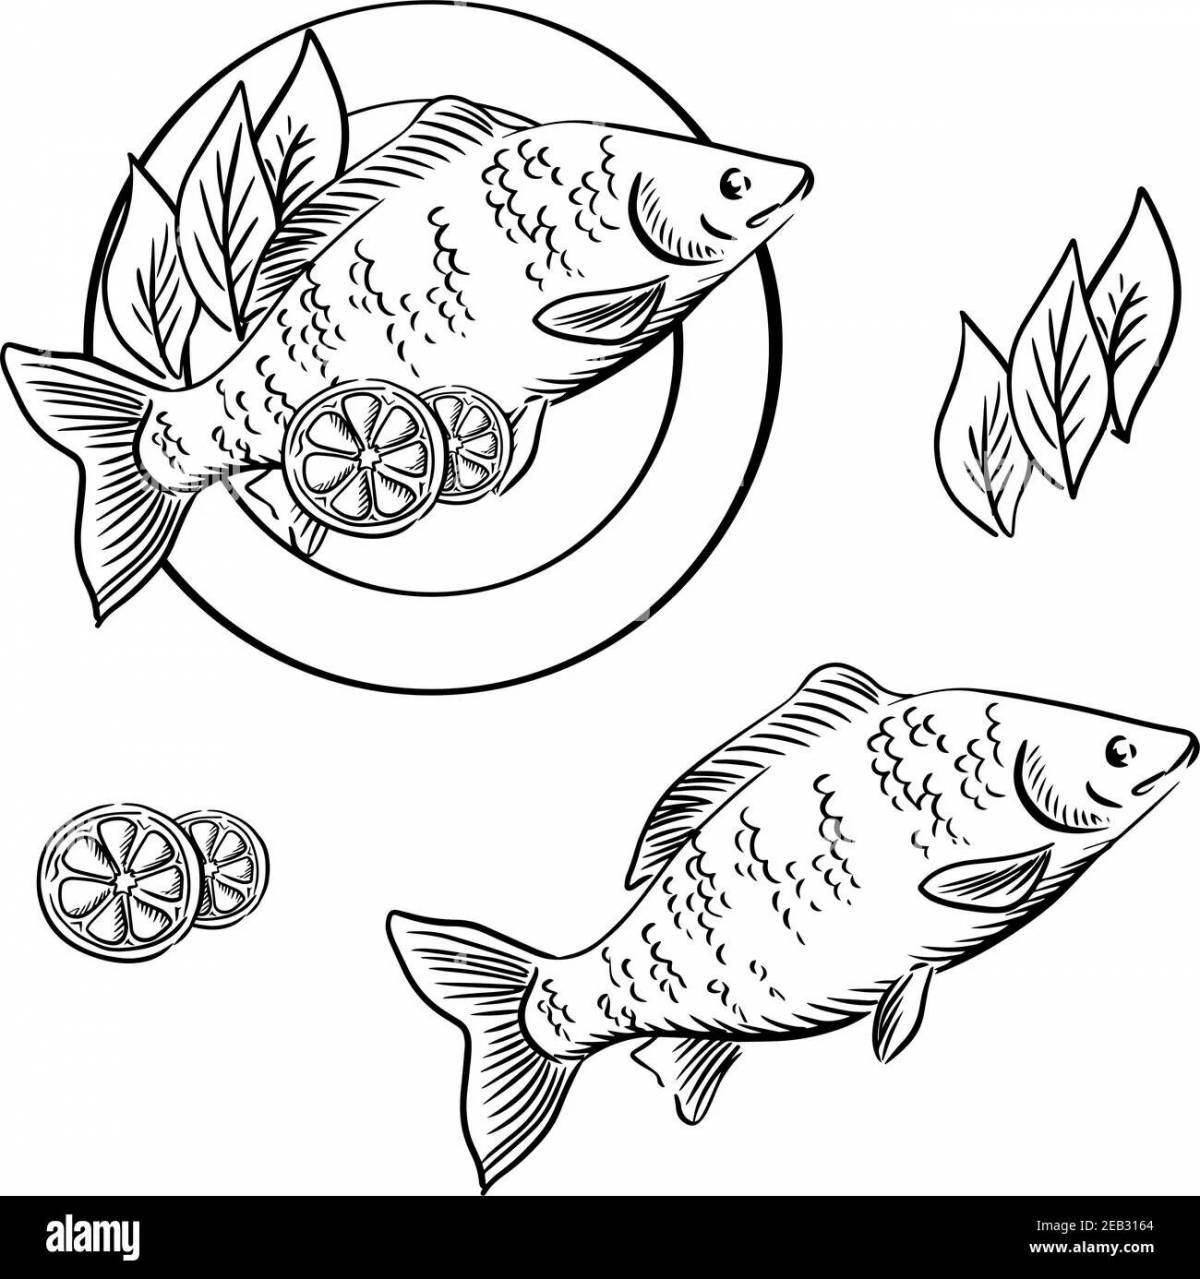 Глянцевая раскраска рыба